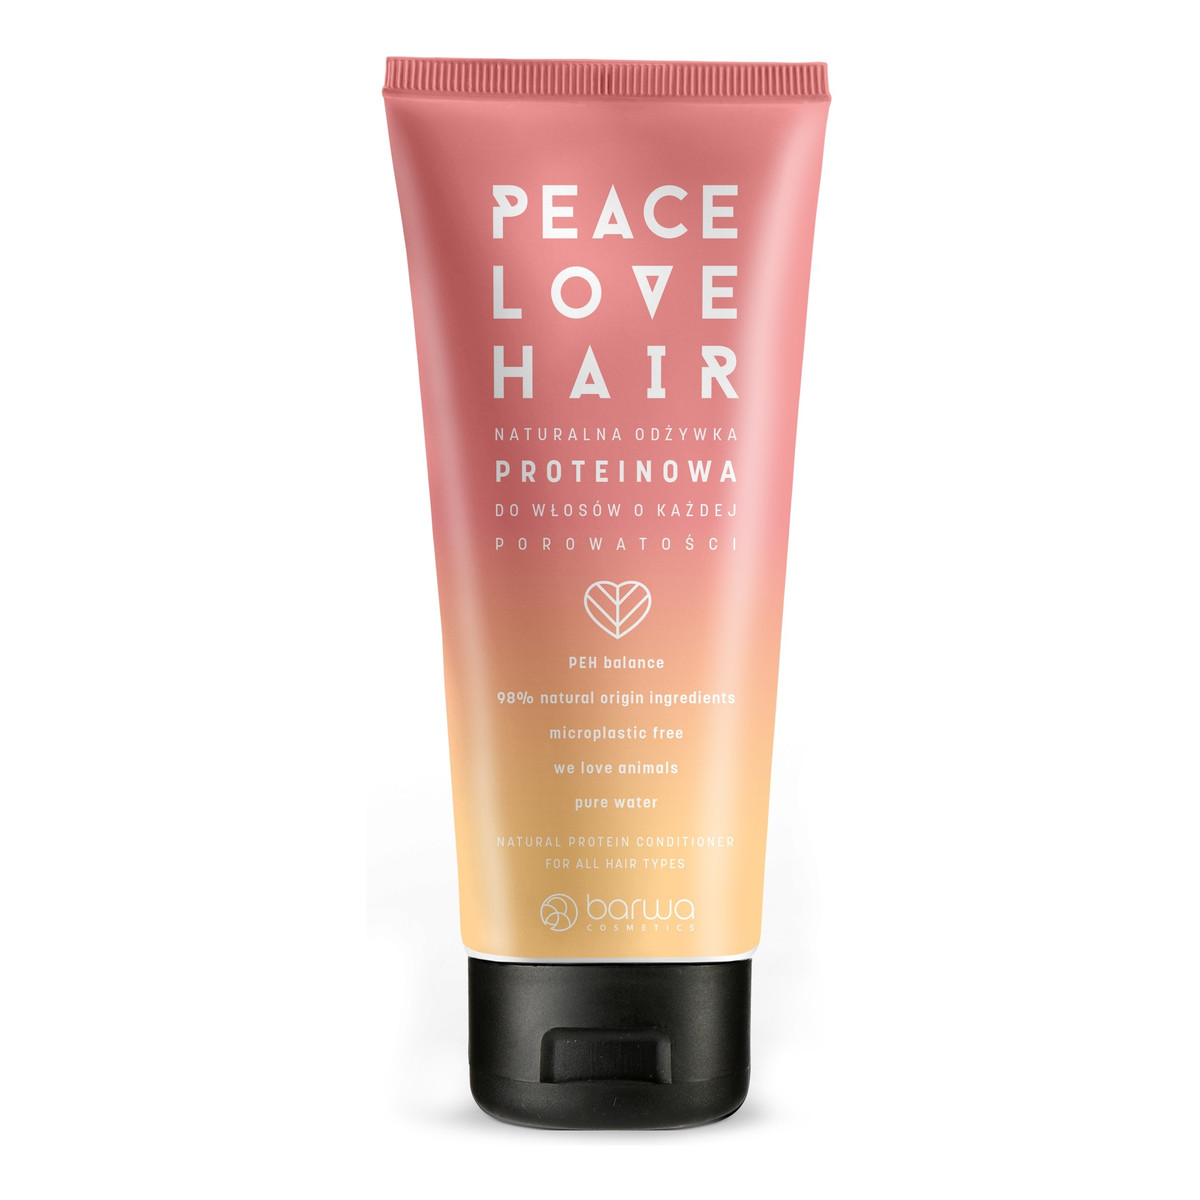 Barwa Peace Love Hair Naturalna Odżywka proteinowa do włosów o każdej porowatości 180ml